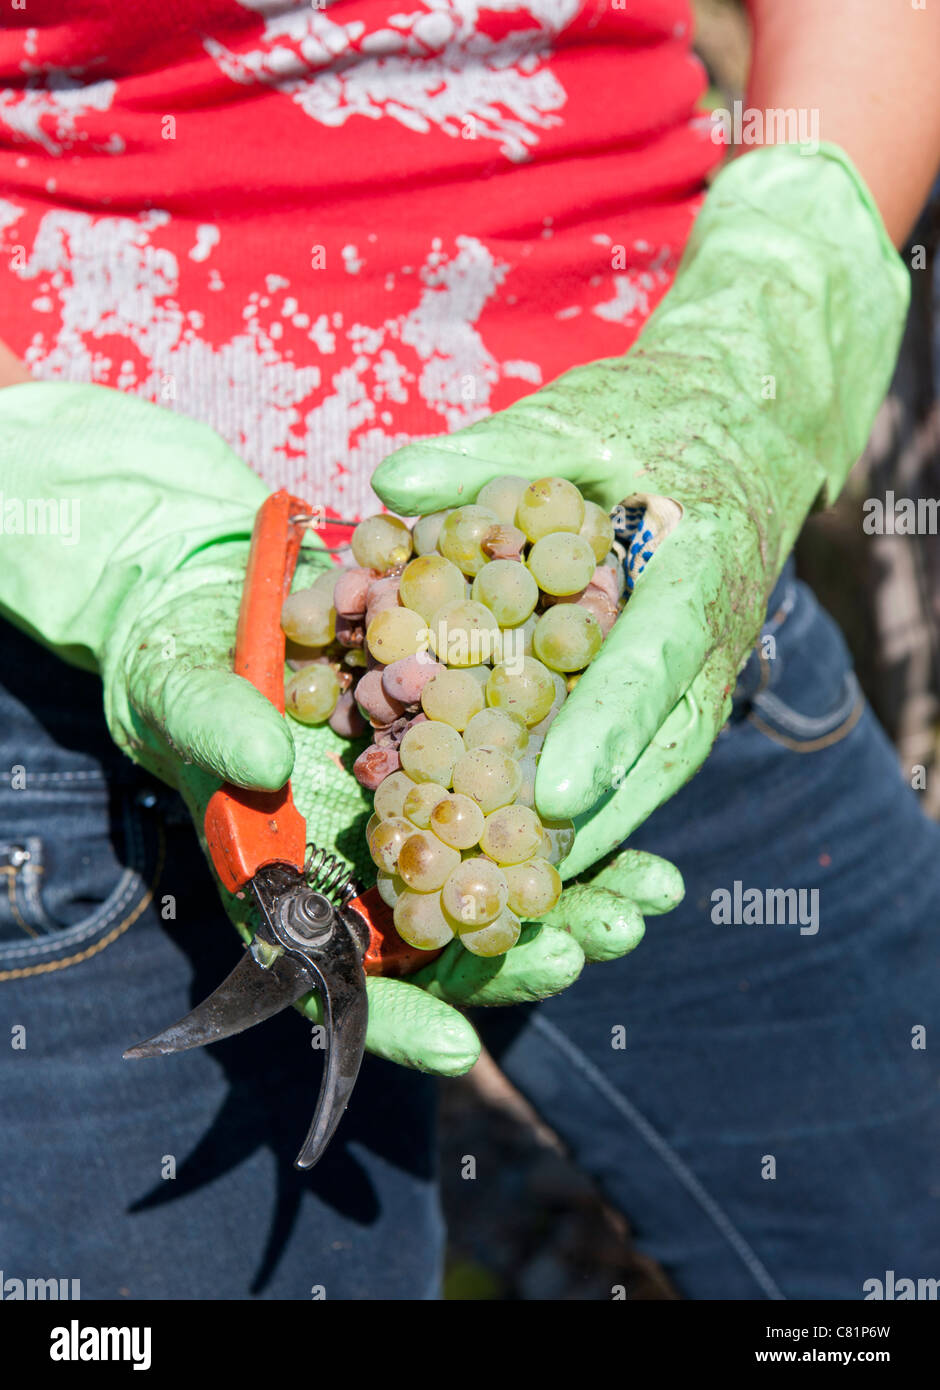 La récolte des raisins Riesling en vallée de la Moselle en Allemagne Banque D'Images